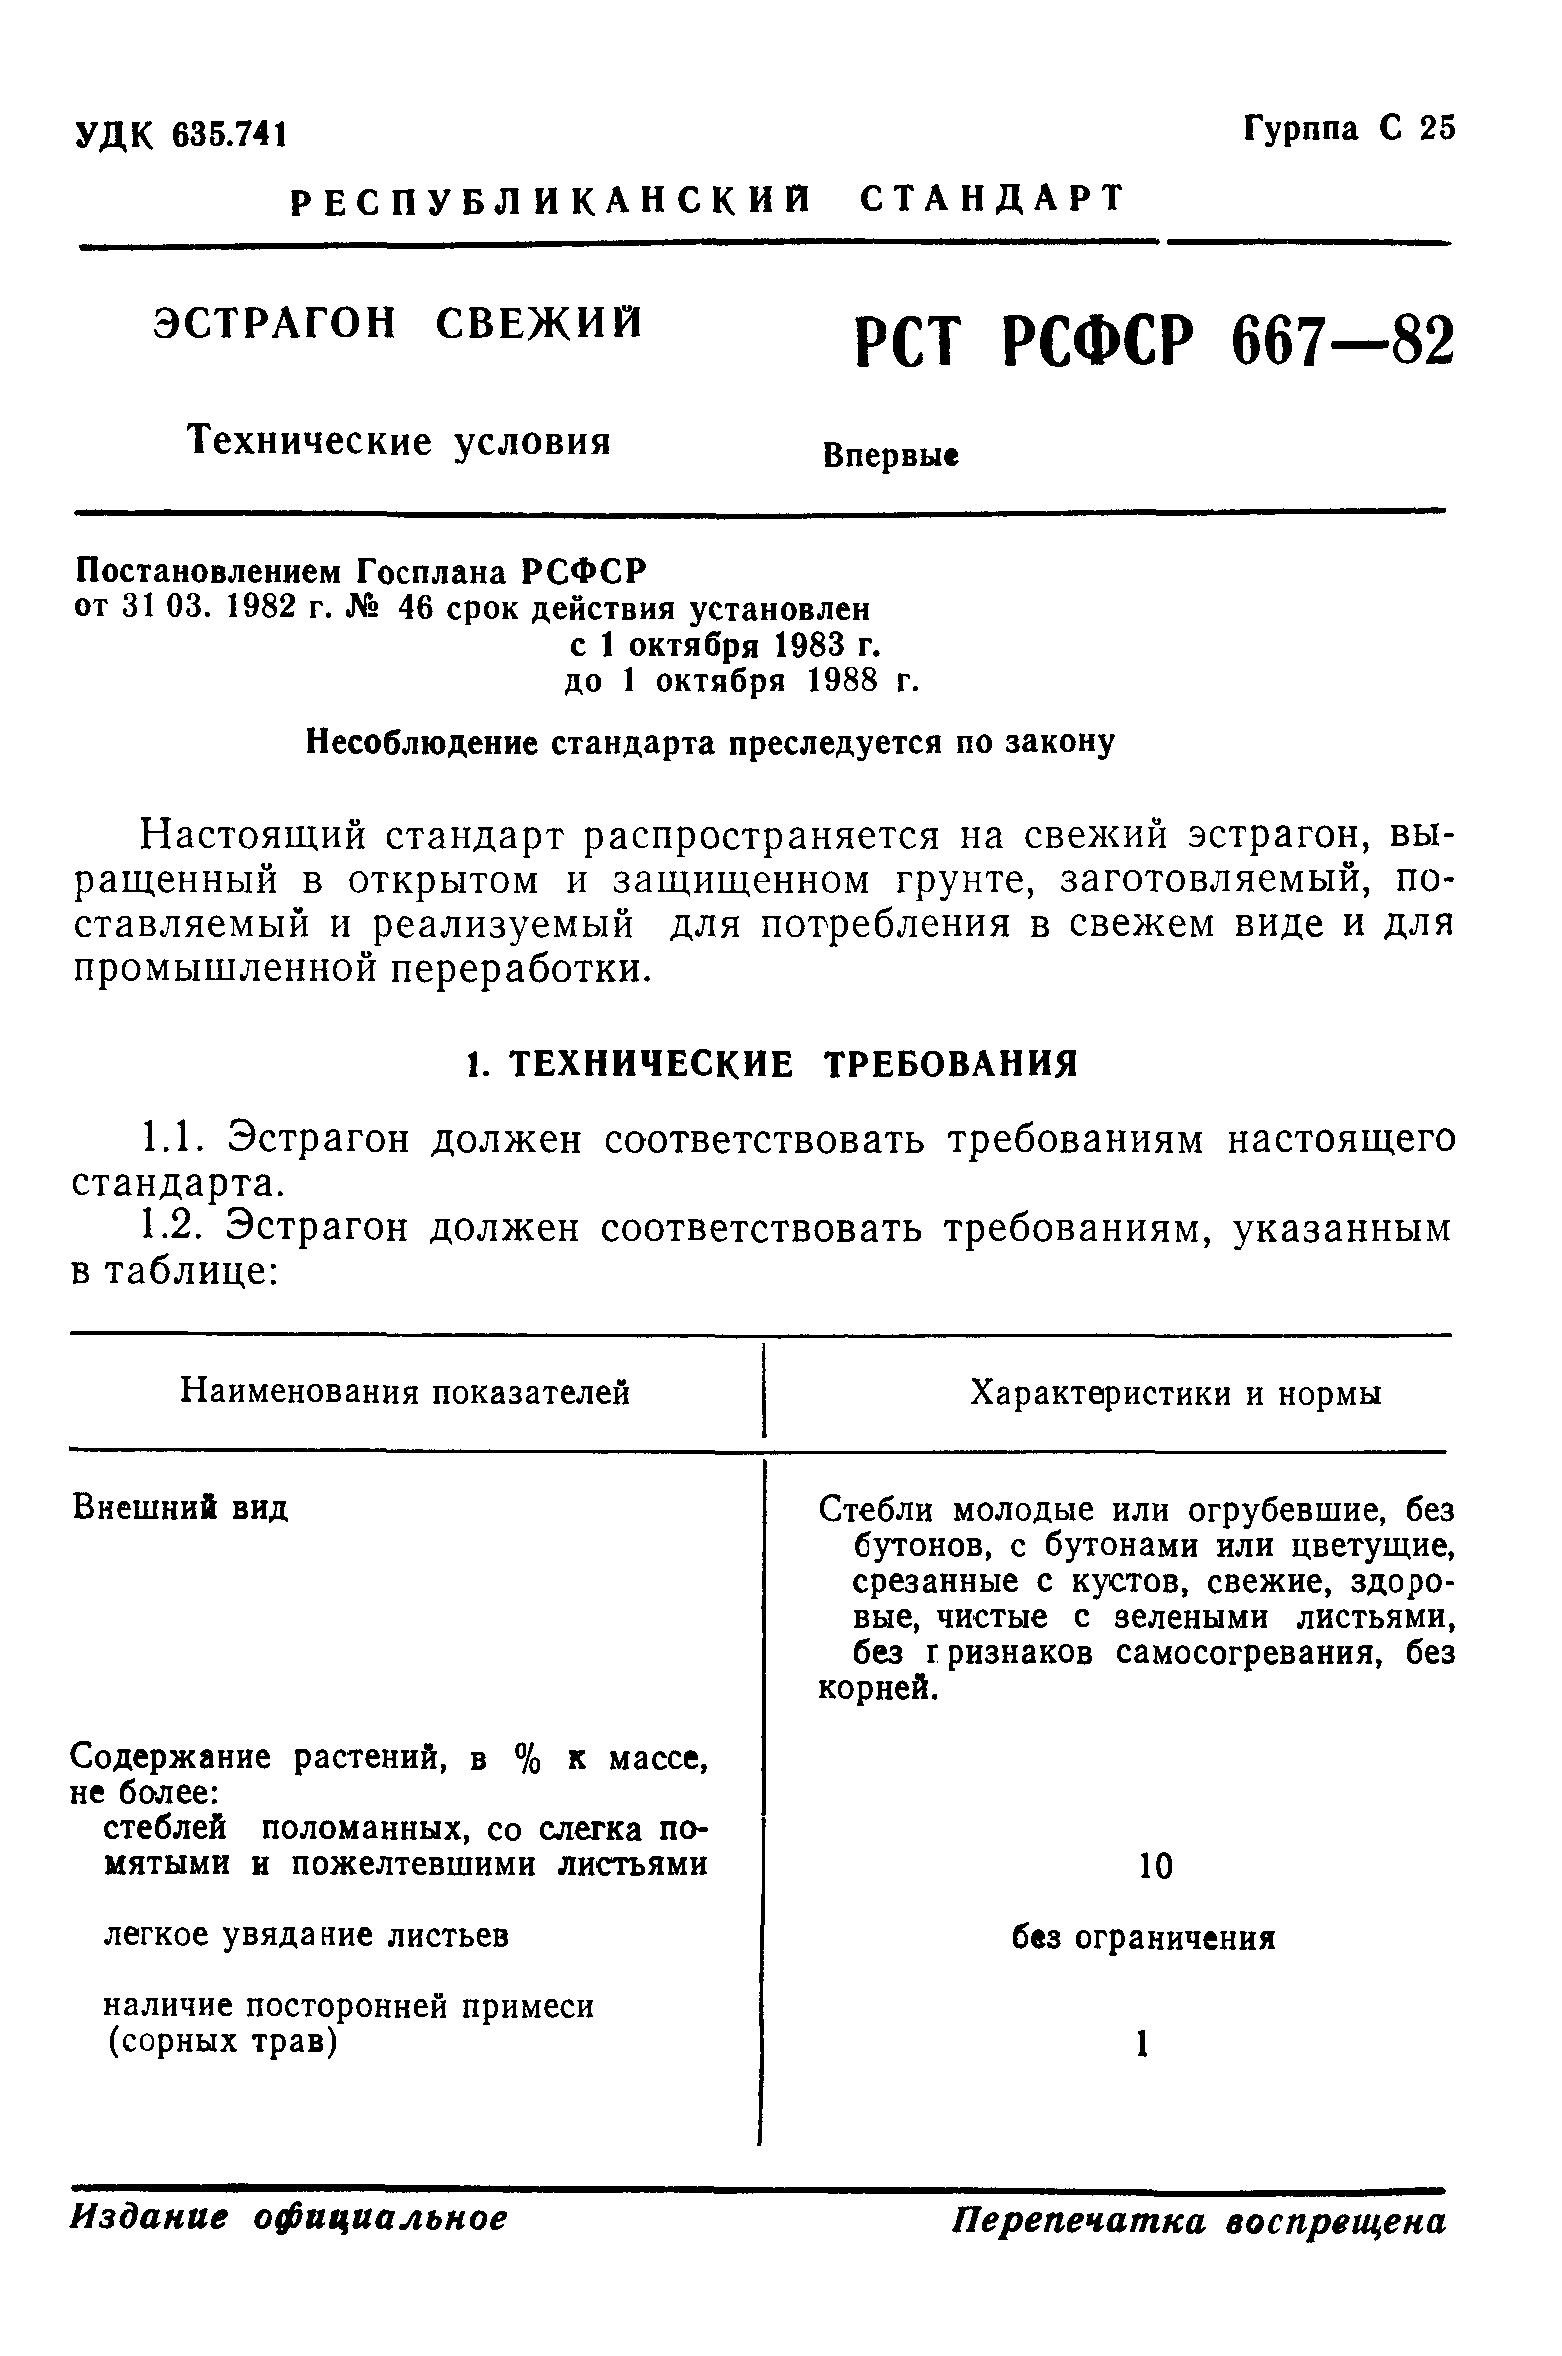 РСТ РСФСР 667-82